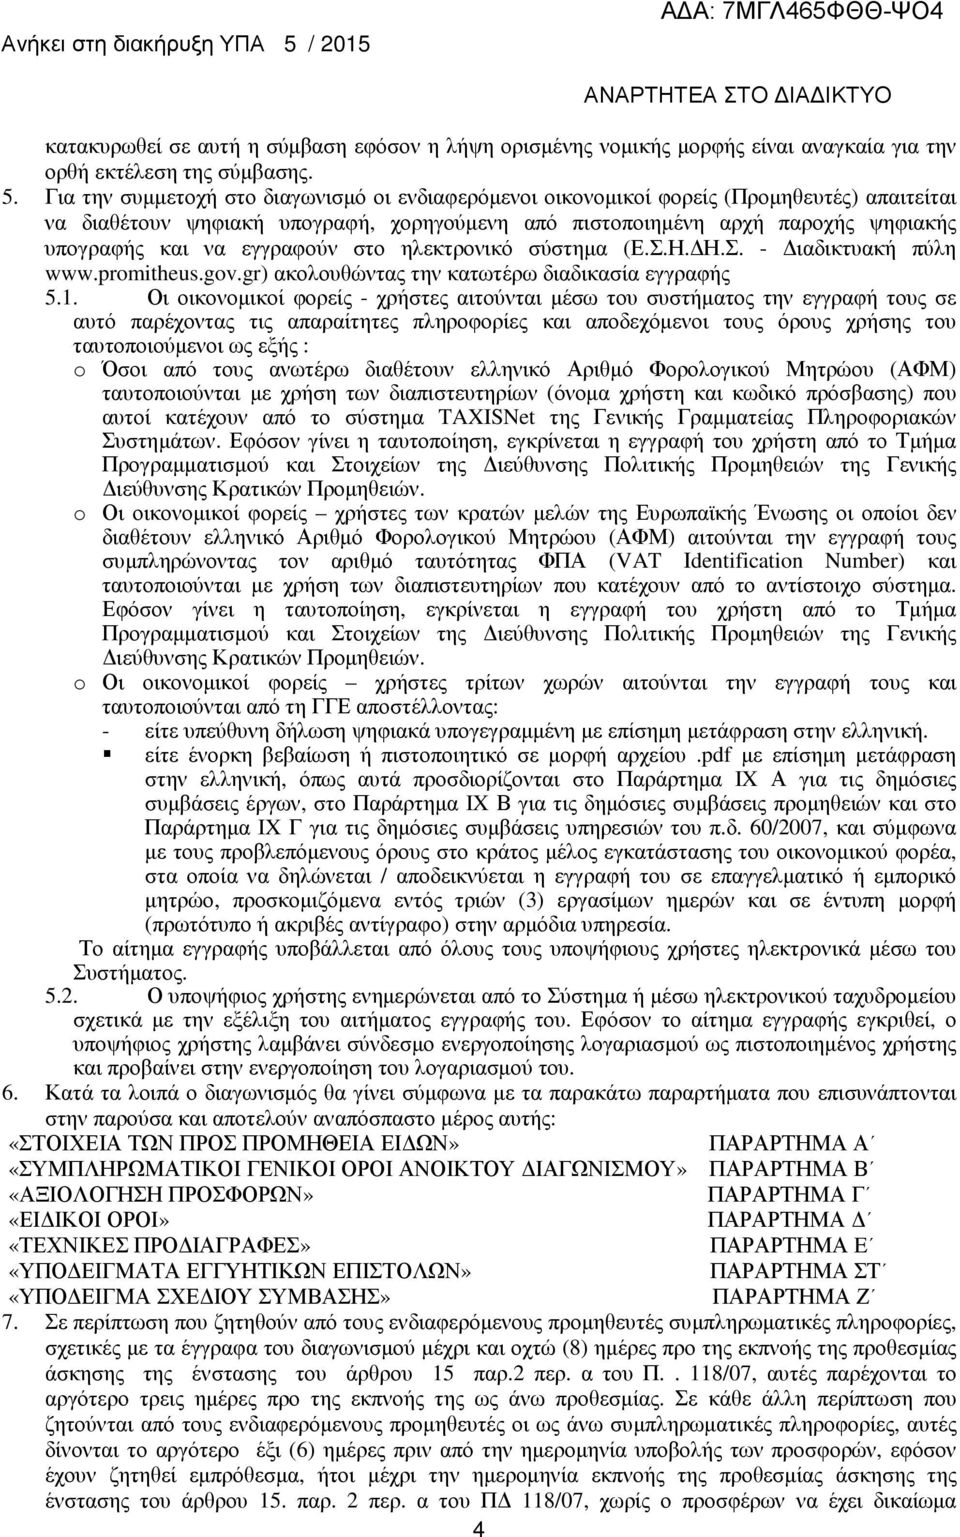 εγγραφούν στο ηλεκτρονικό σύστηµα (Ε.Σ.Η. Η.Σ. - ιαδικτυακή πύλη www.promitheus.gov.gr) ακολουθώντας την κατωτέρω διαδικασία εγγραφής 5.1.